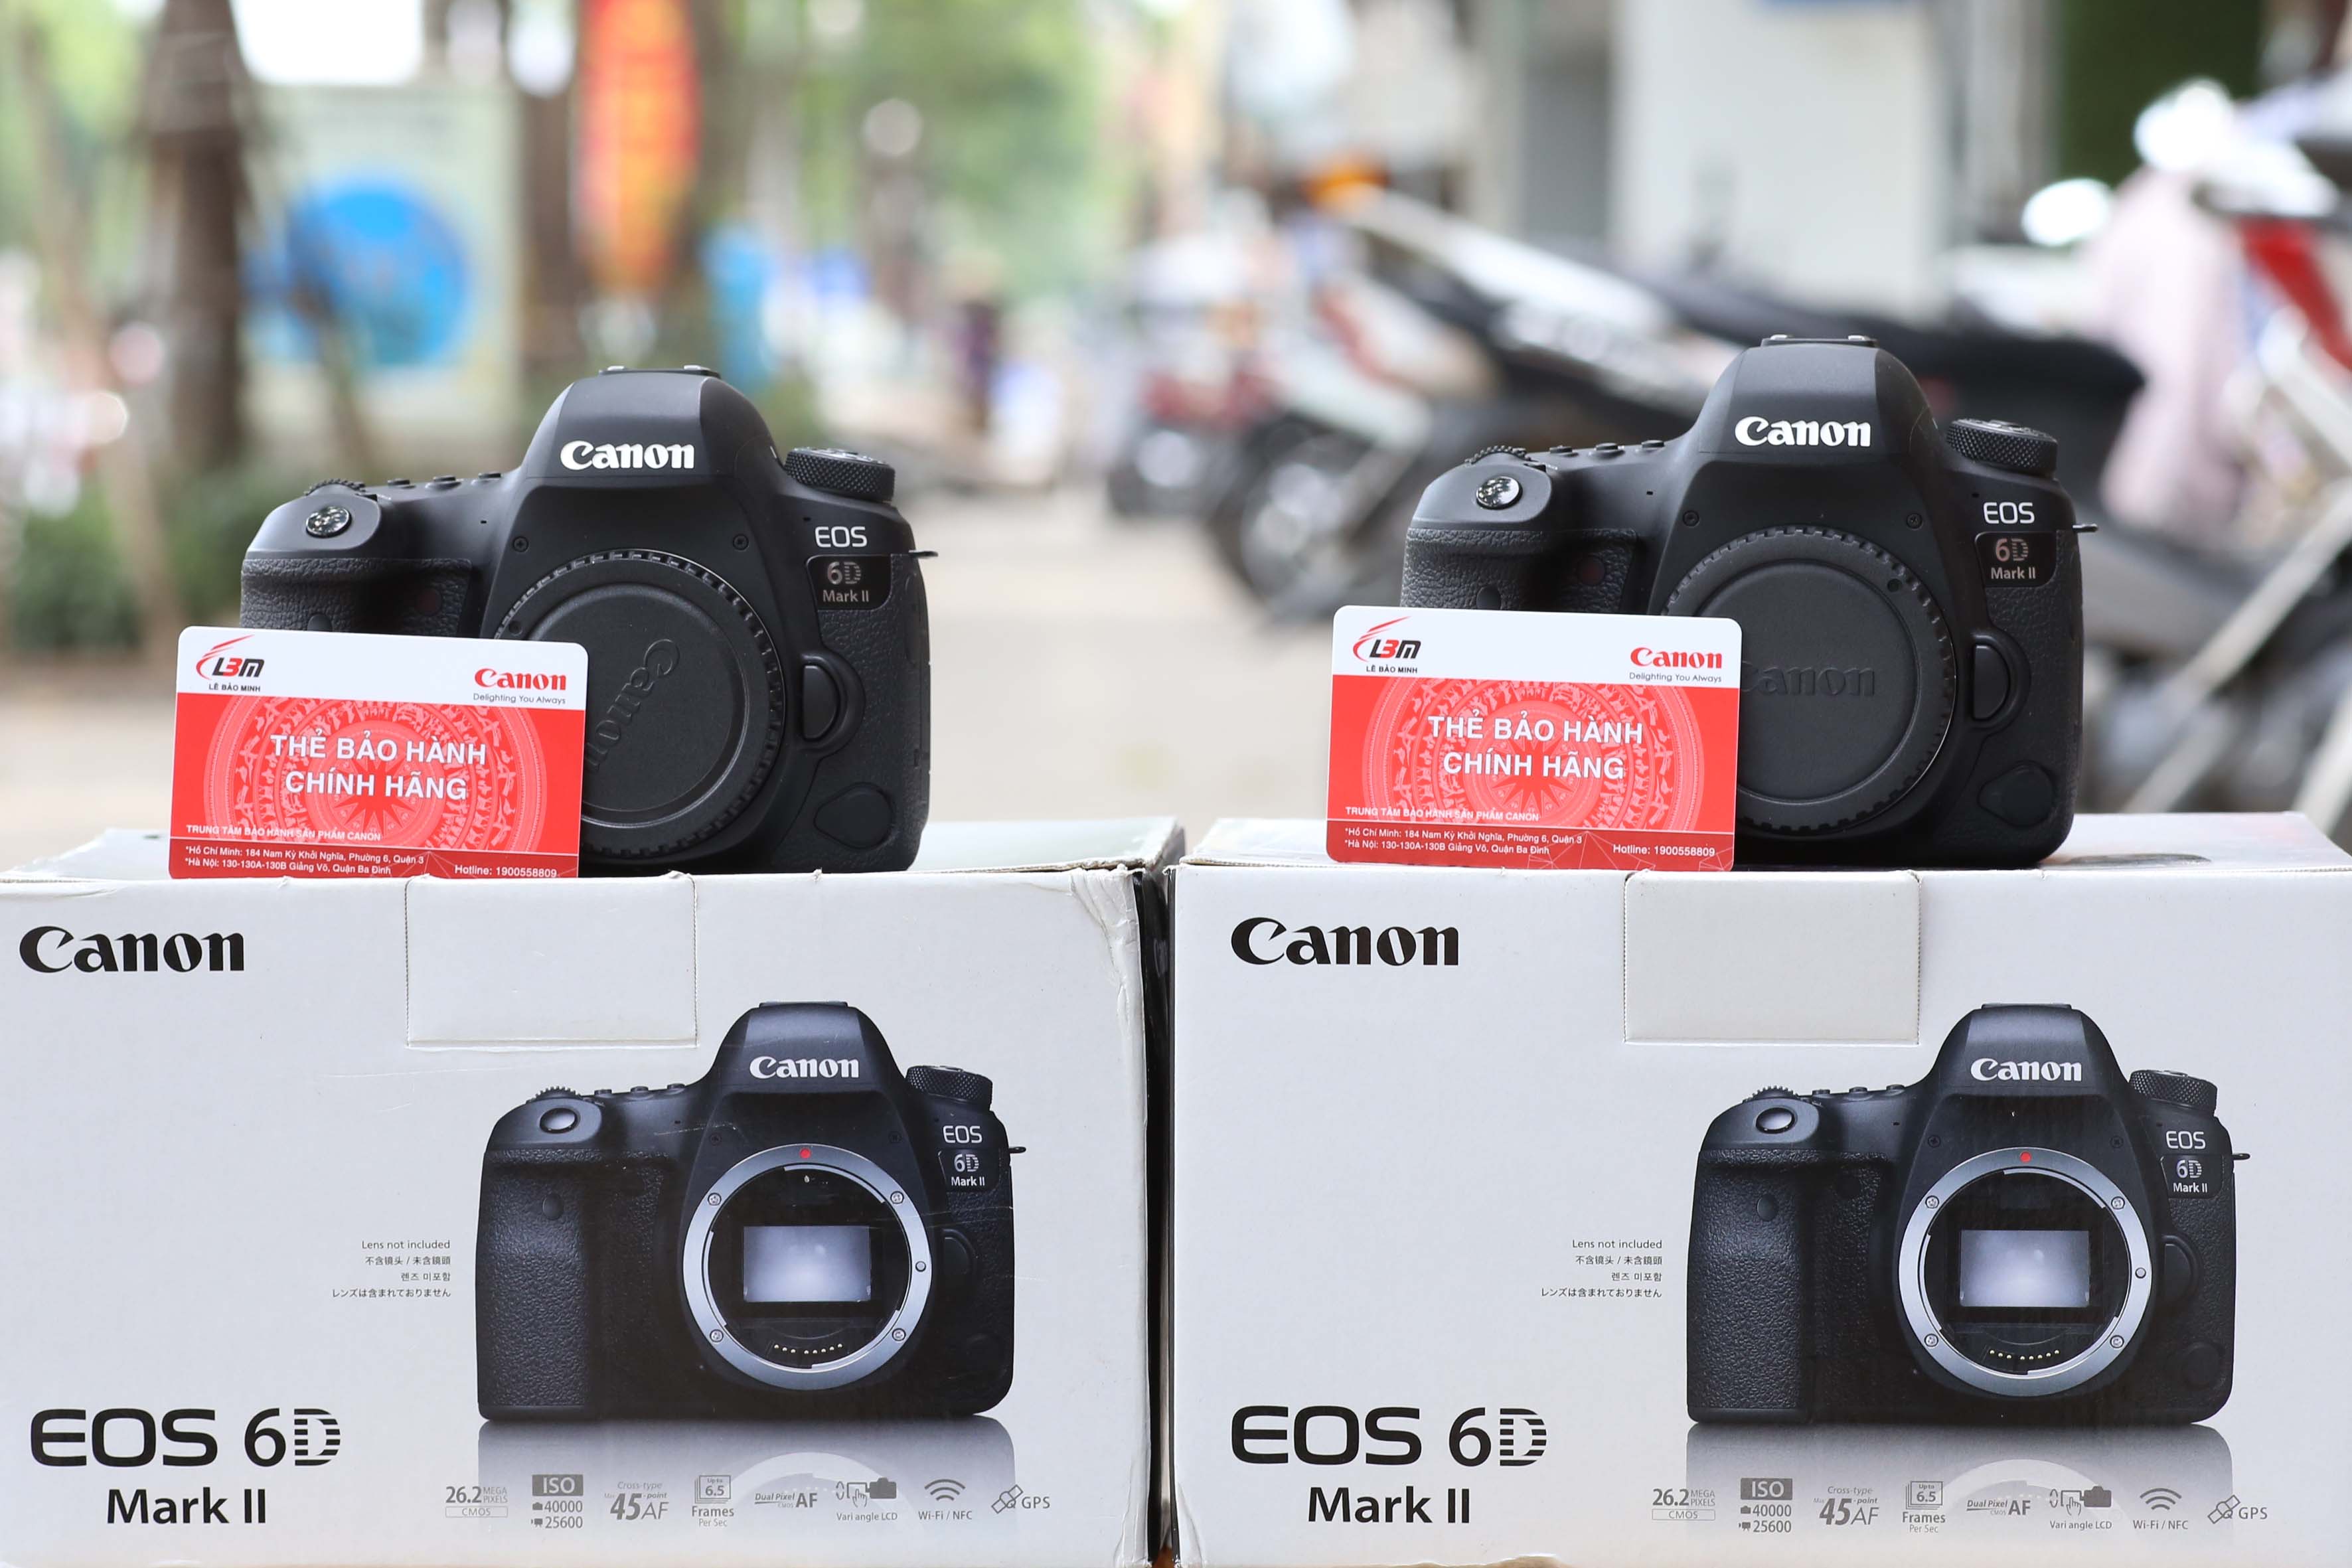 Canon EOS 6D Mark II: Canon EOS 6D Mark II là một chiếc máy ảnh chuyên nghiệp ấn tượng với khả năng chụp ảnh chất lượng cao, đặc biệt là trong các điều kiện ánh sáng thấp. Máy ảnh này còn được trang bị các tính năng kết nối Wi-Fi, NFC và GPS, giúp bạn dễ dàng chia sẻ những bức ảnh đẹp và định vị hình ảnh của mình.